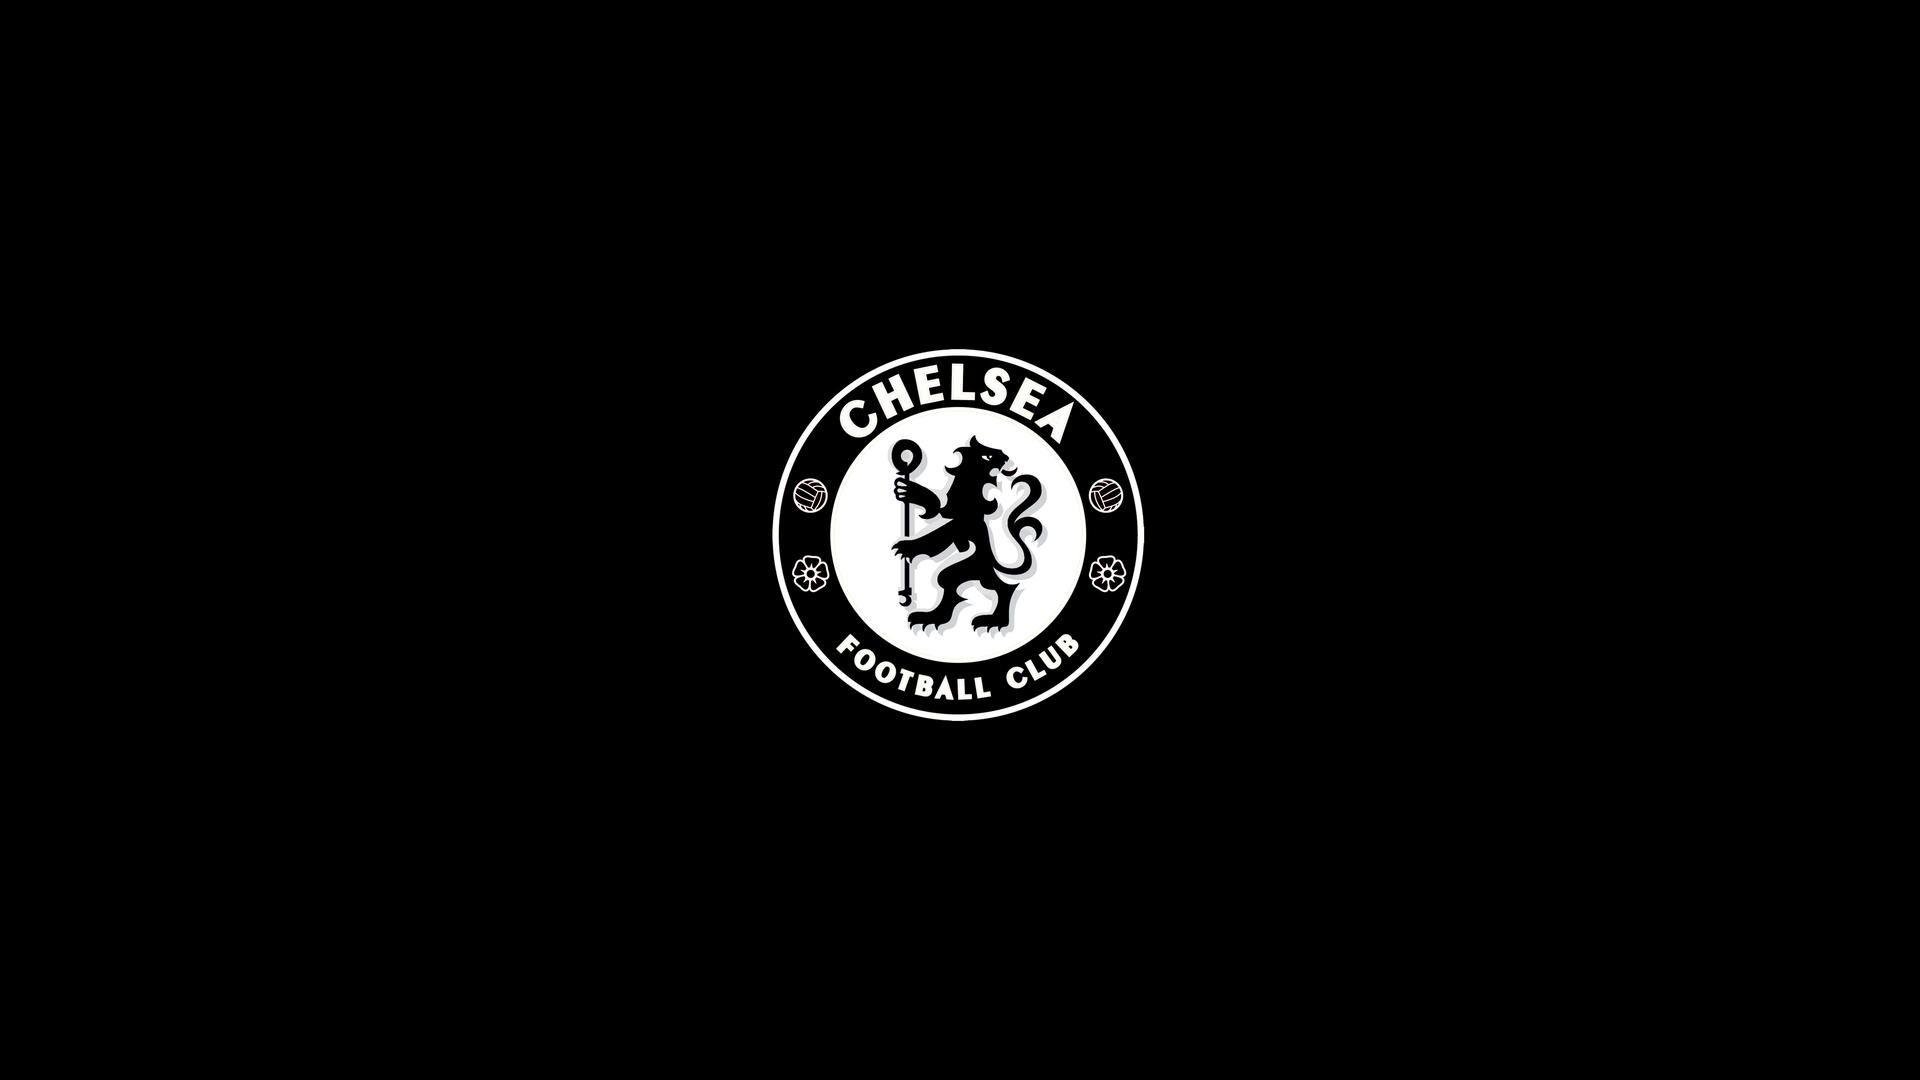 Chelsea Logo Black wallpapers HD 2016 in Soccer